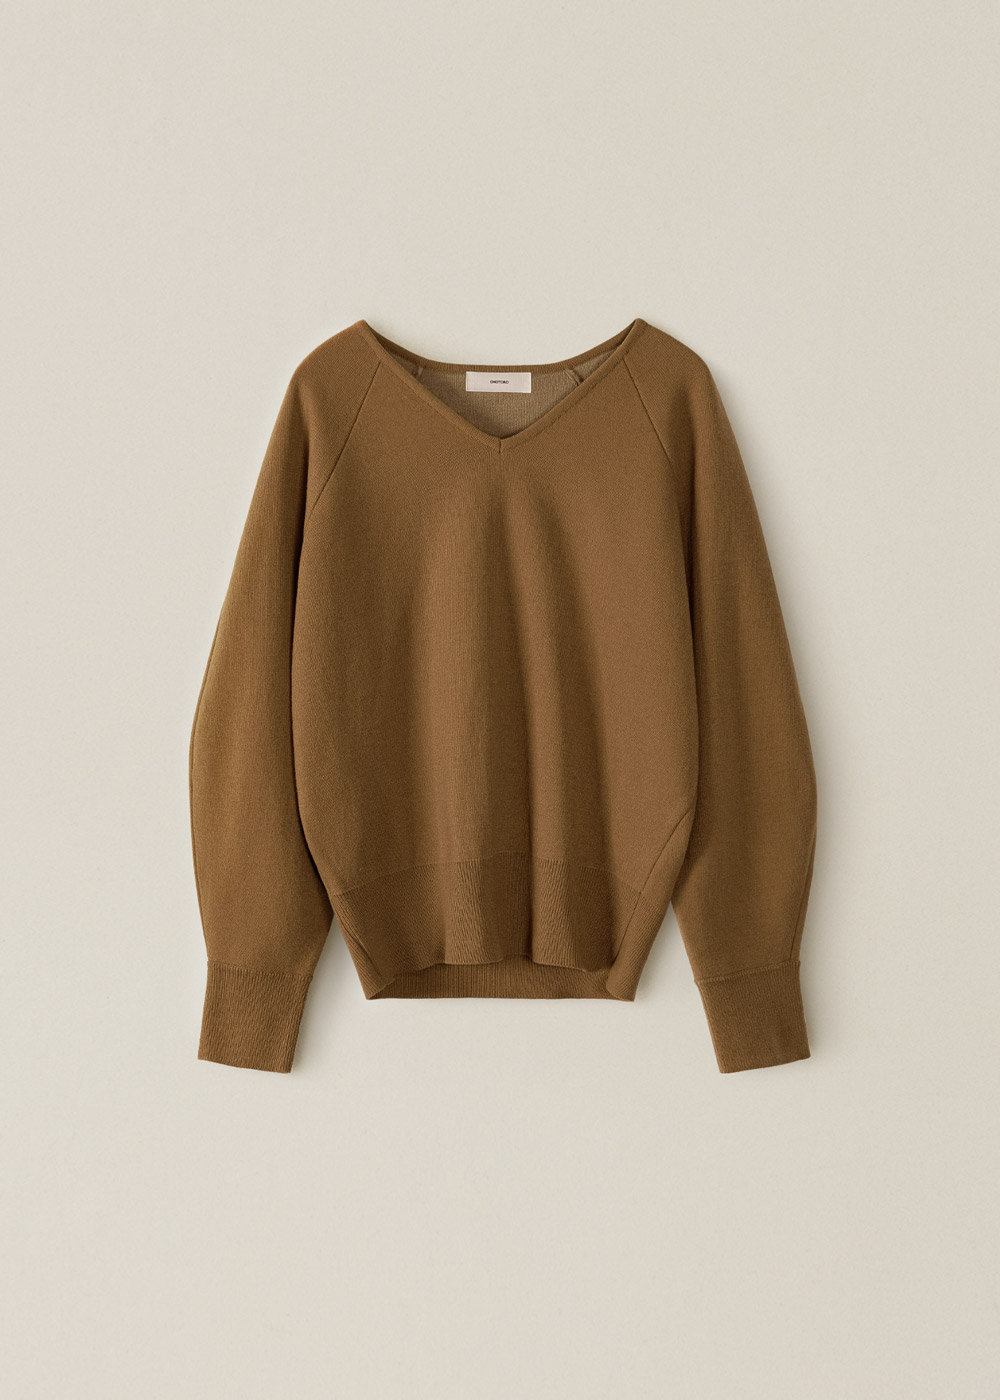 wool curve knit | OHOTORO